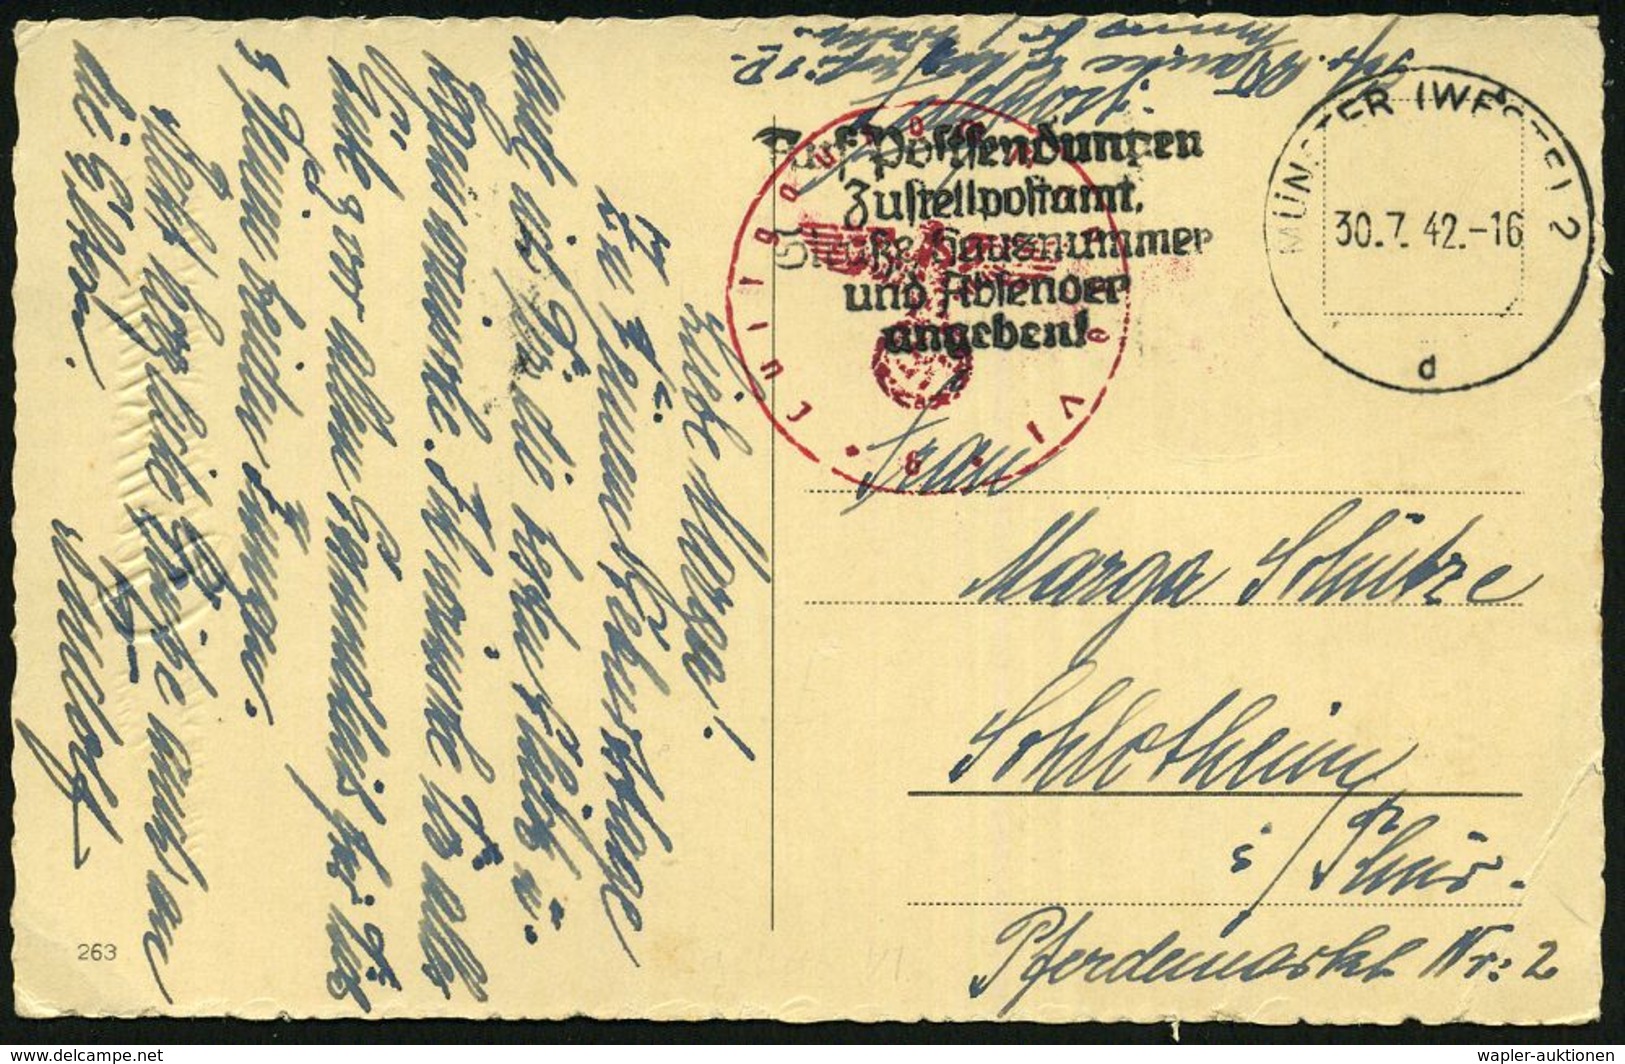 MÜNSTER (WESTF) 2/ Dd/ EIGENE VORSICHT/ BESTER UNFALLSCHUTZ #bzw.# Auf Postsendungen/ Zustell-postamt../ Angeben. 1941/4 - Seconda Guerra Mondiale